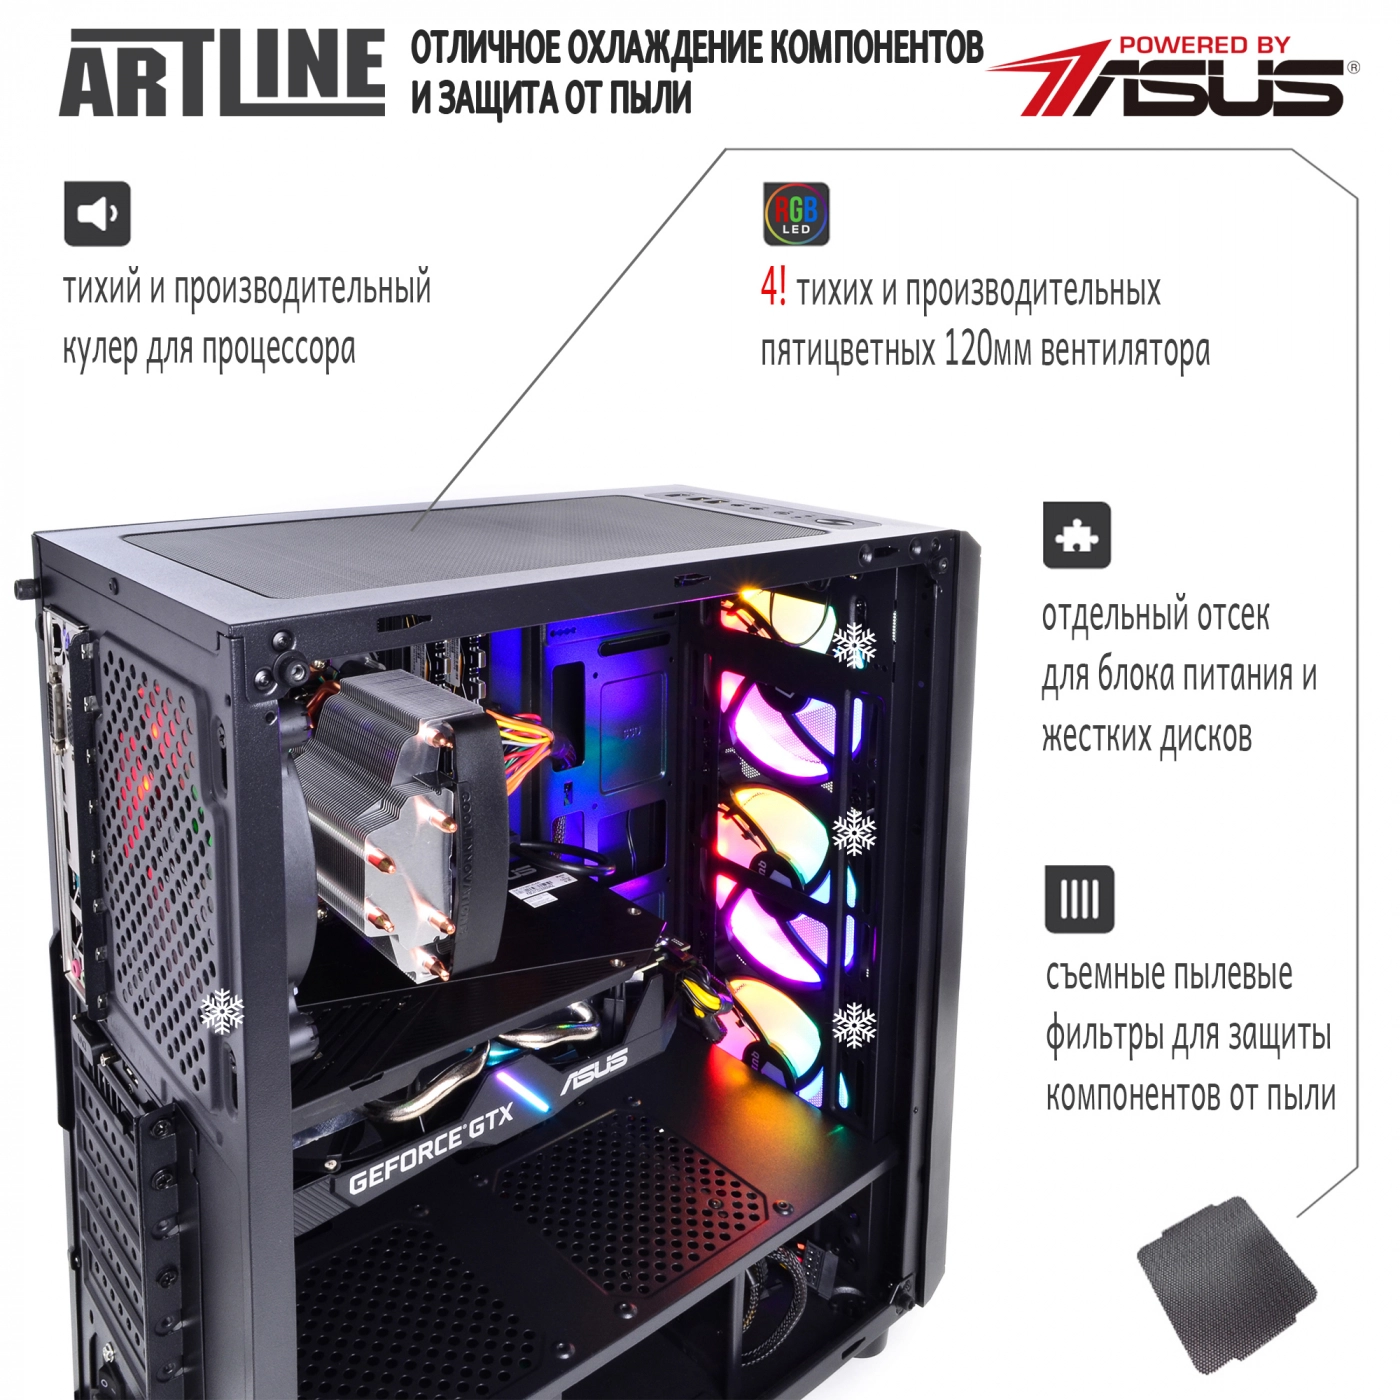 Купить Компьютер ARTLINE Gaming X74v06 - фото 3